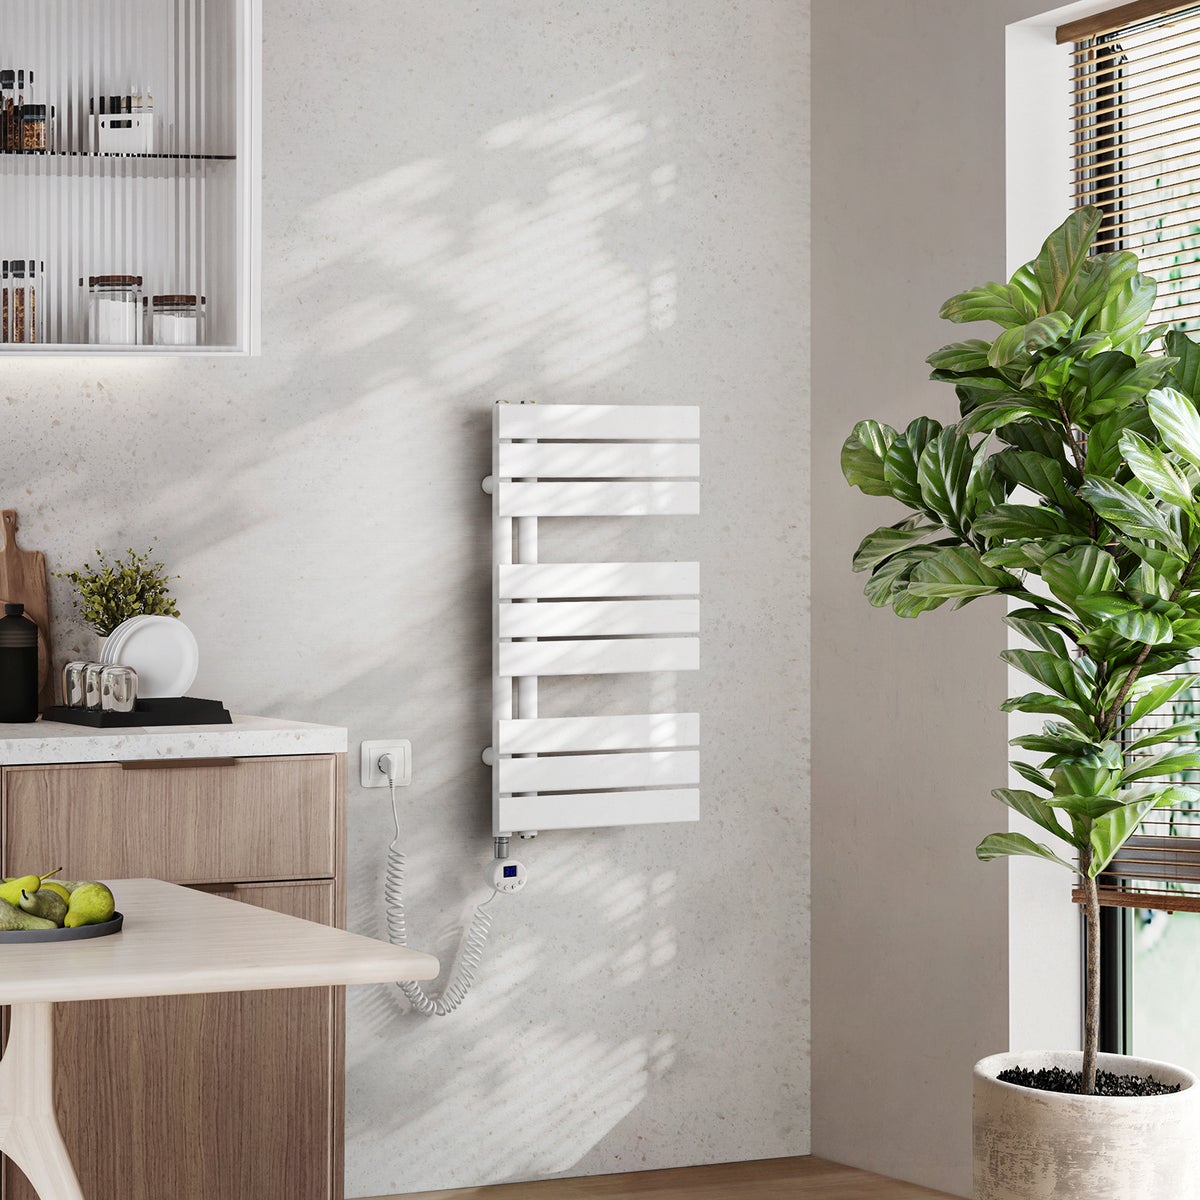 EMKE Badheizkörper Elektrisch mit Thermostat, Handtuchheizkörper Panel inkl Heizstab mit timer, Weiß, 762x400mm